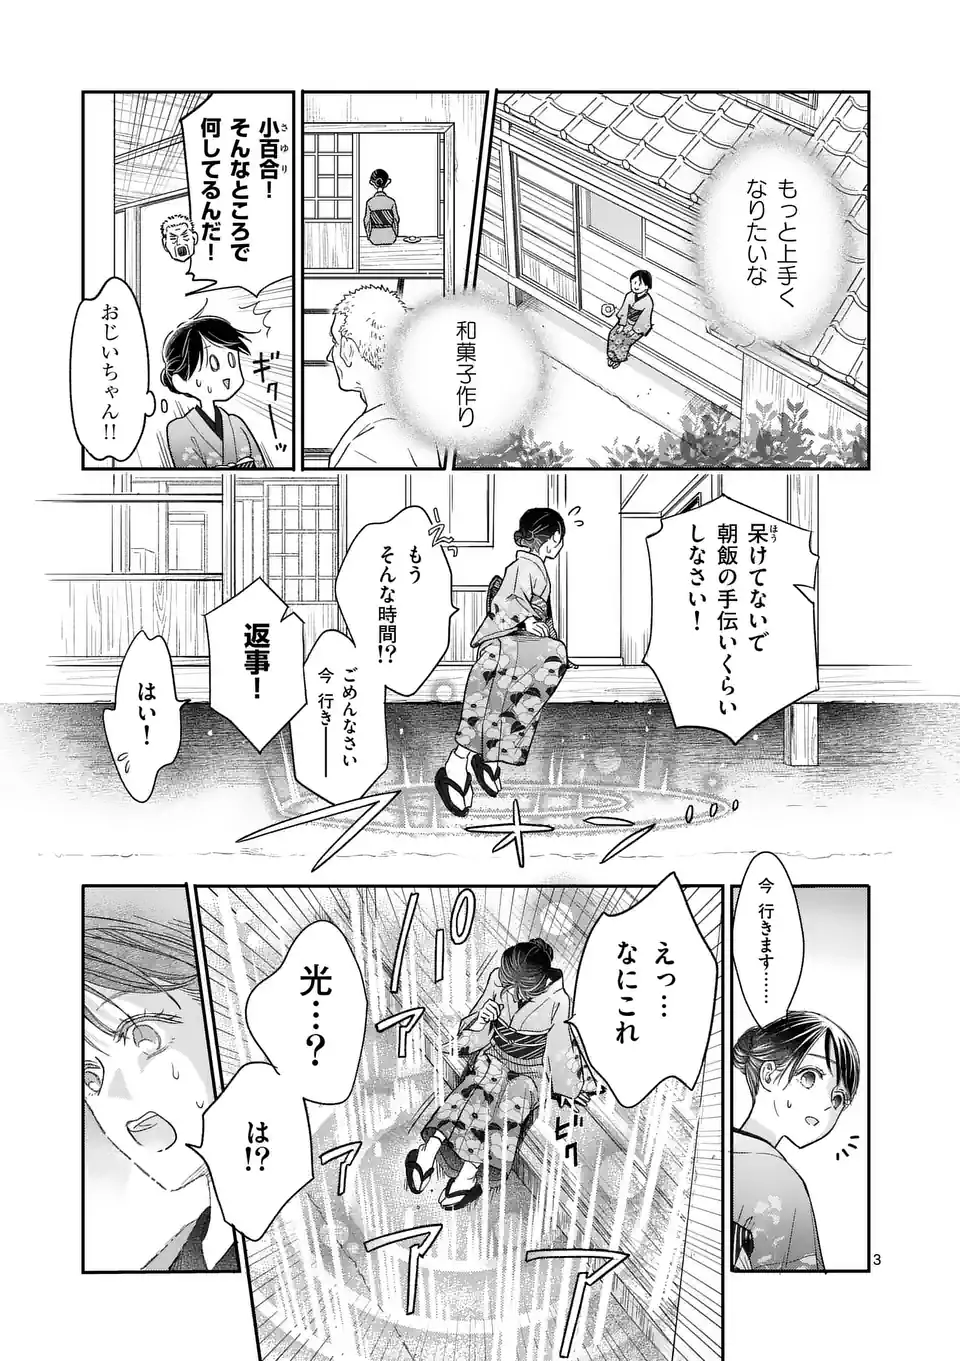 Makizoe de Isekai ni Yobidasareta no de, Sekai Kanmushi shite Wagashi Tsukurimasu - Chapter 1 - Page 3